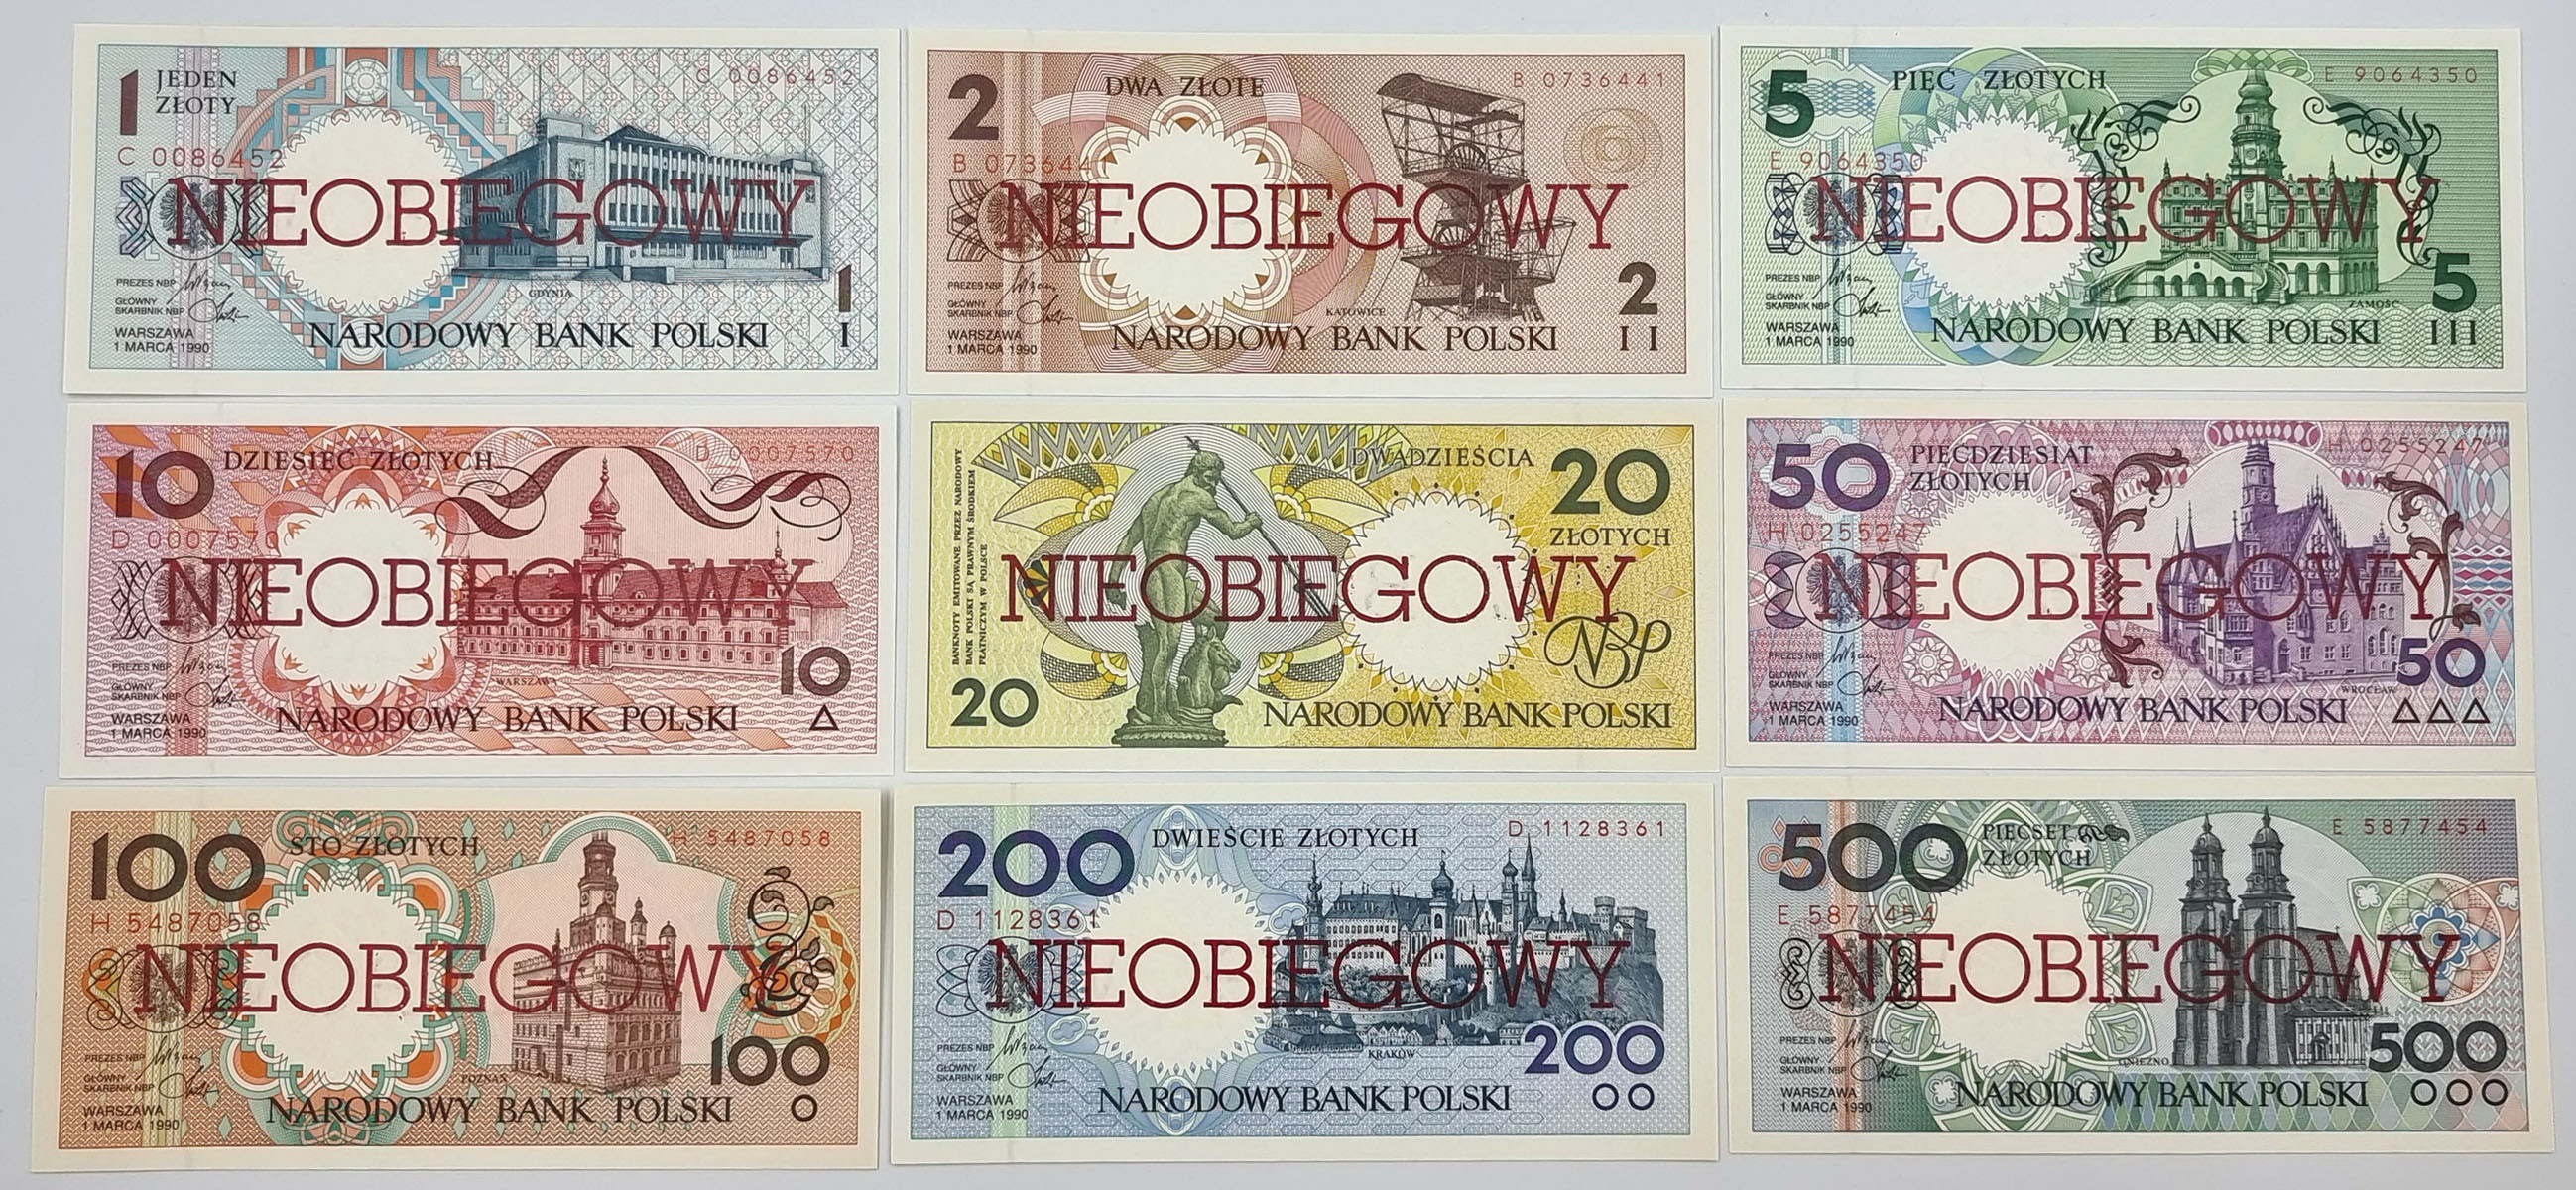 Miasta Polskie 1990 komplet banknotów 1-500 złotych NIEOBIEGOWY